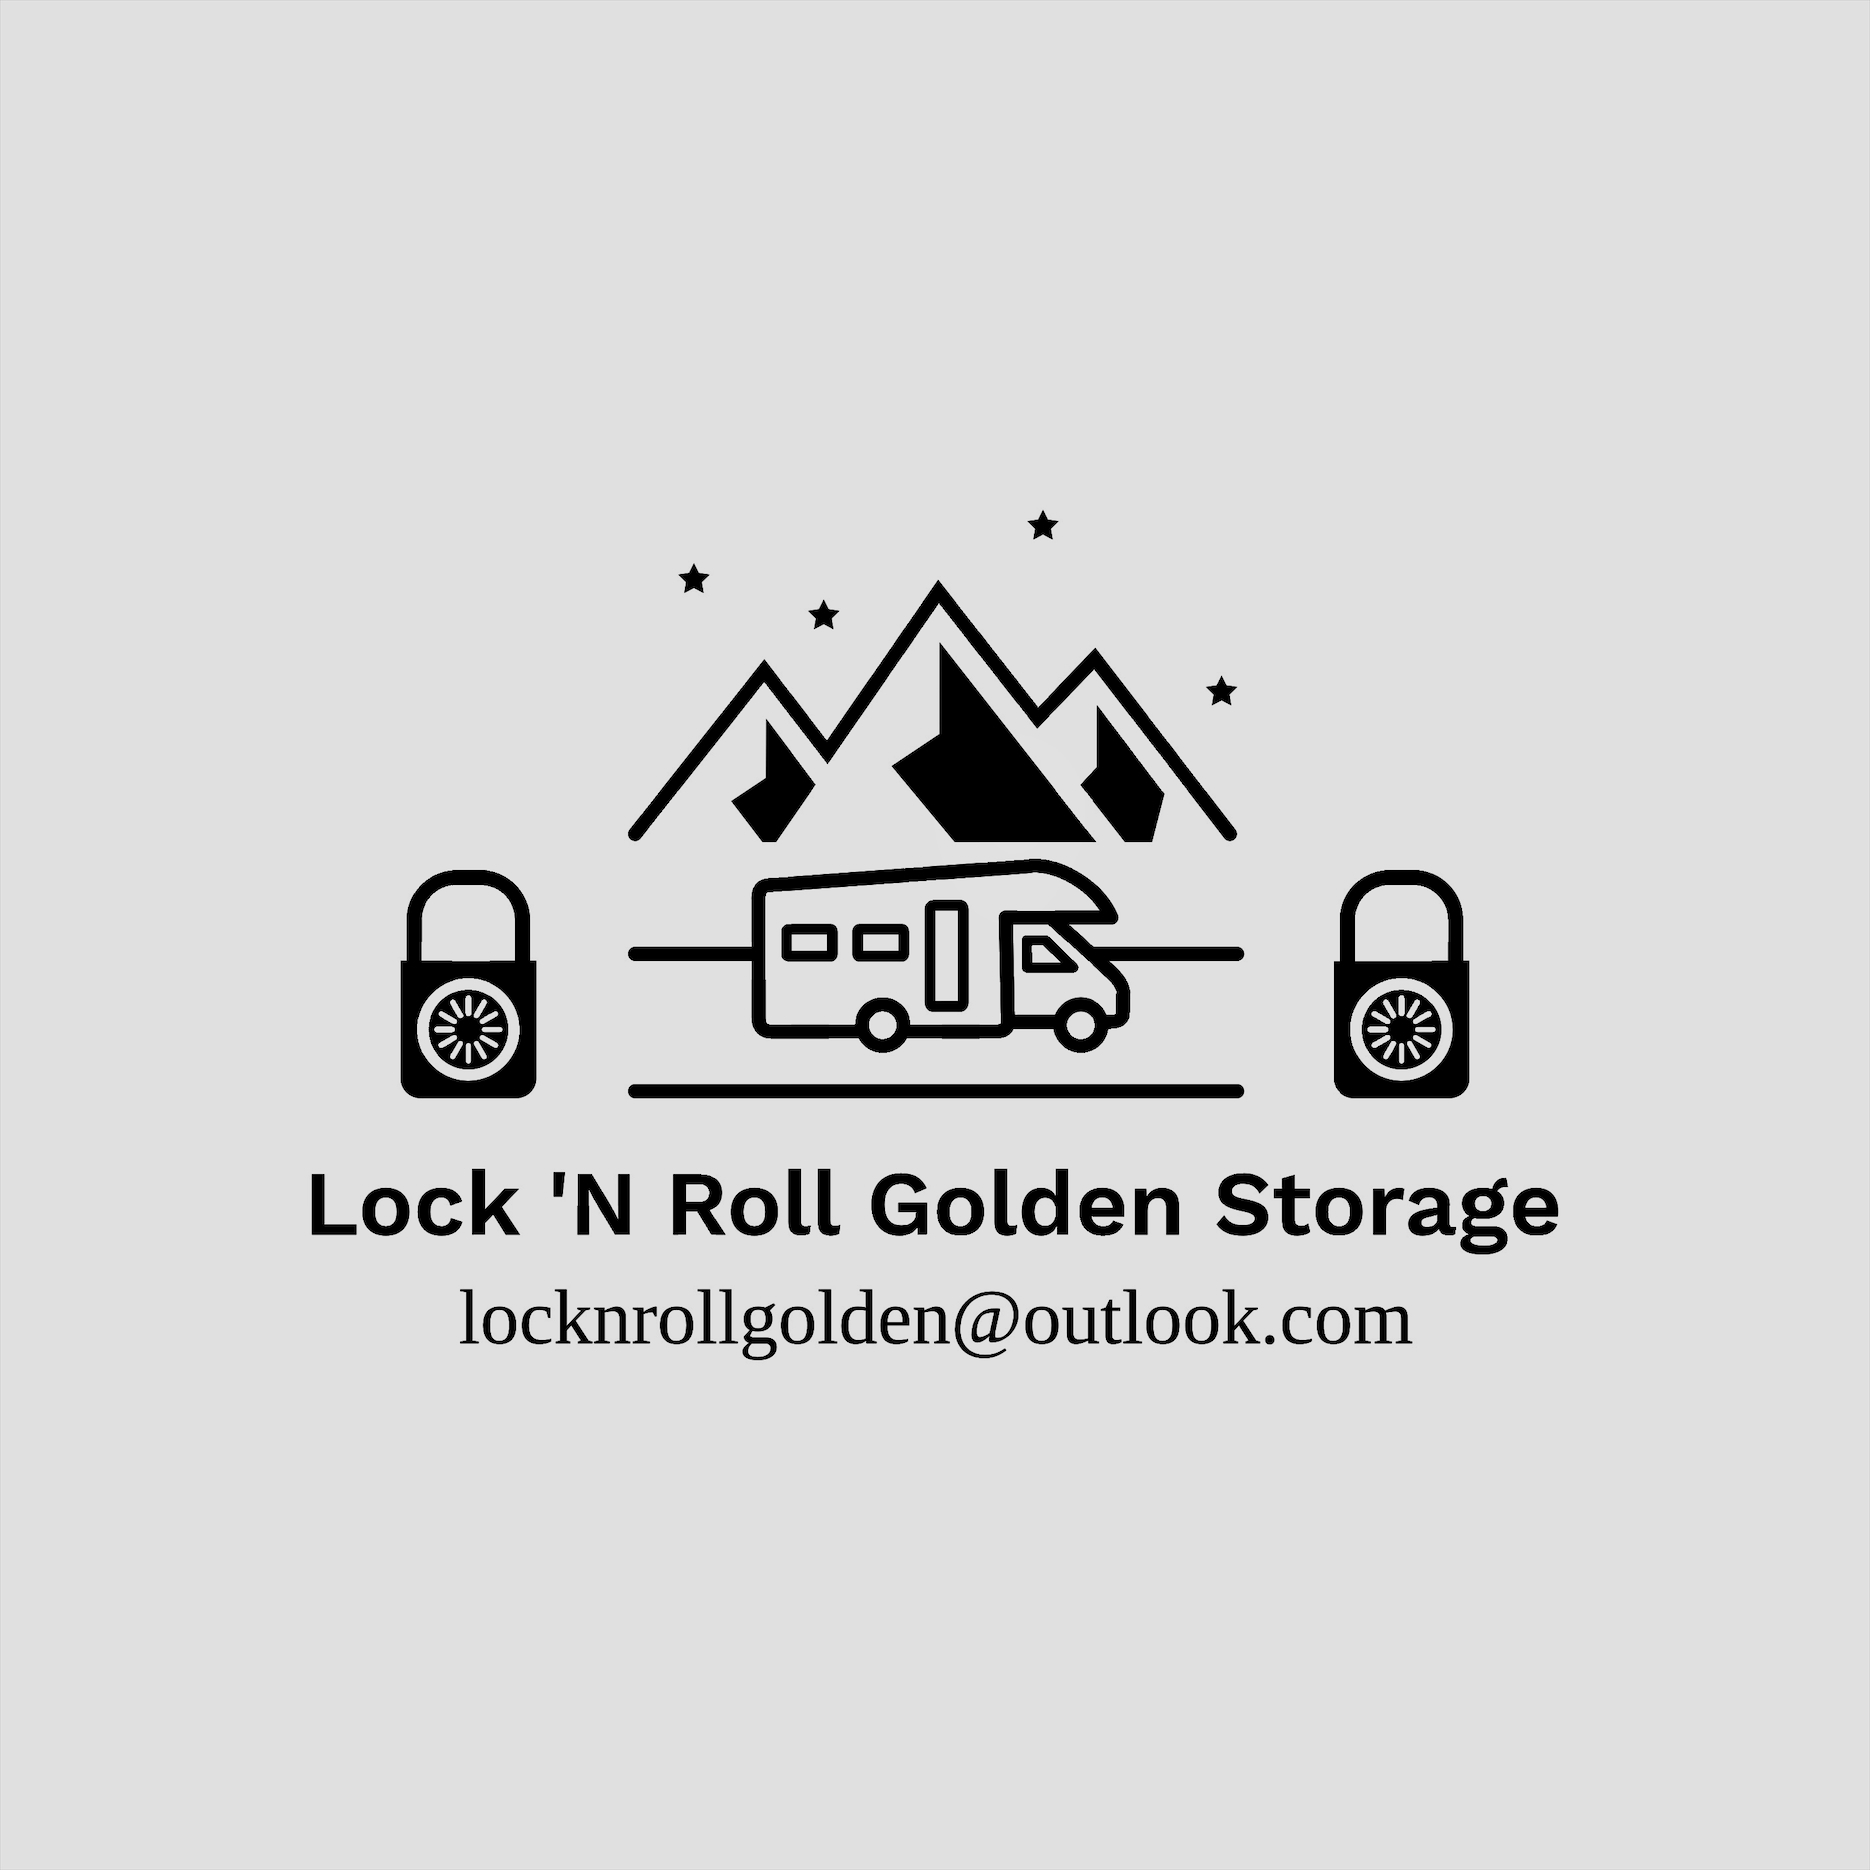 Lock ‘N Roll Golden Storage